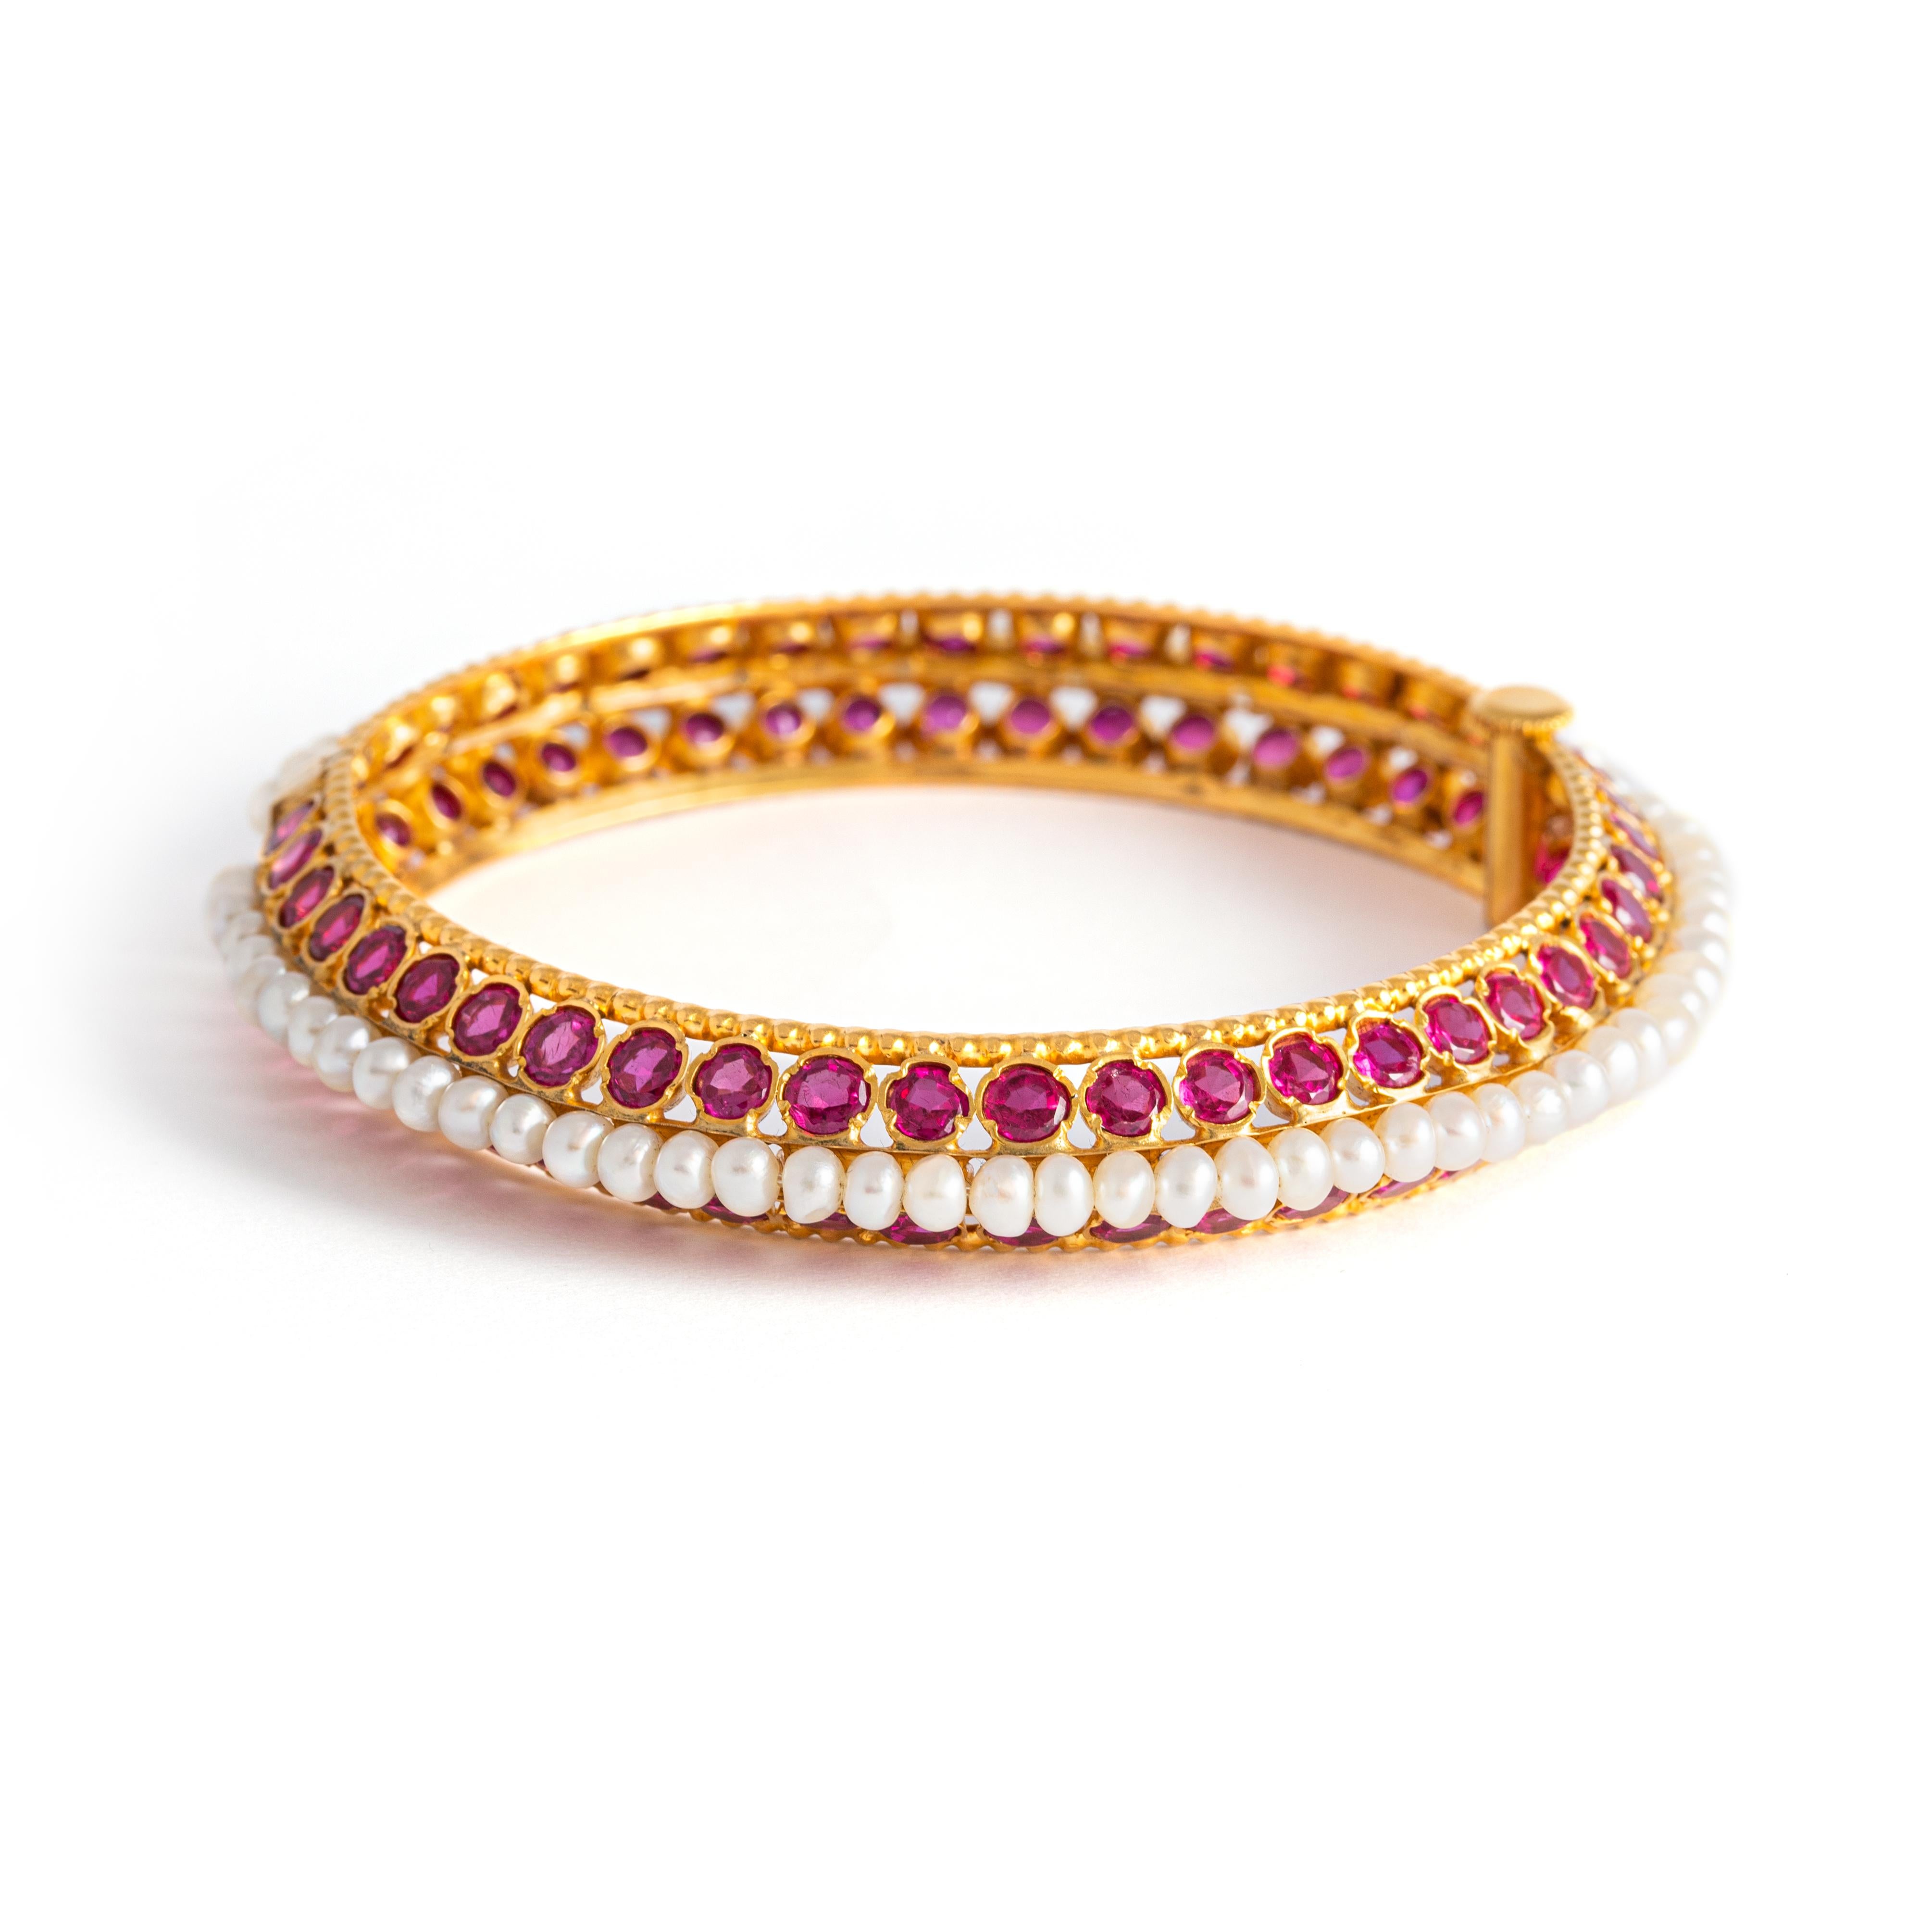 Bracelet indien serti de perles baroques et de rubis ronds sur or jaune.
Circonférence : environ 19,00 centimètres.
Poids : 39.00 grammes.